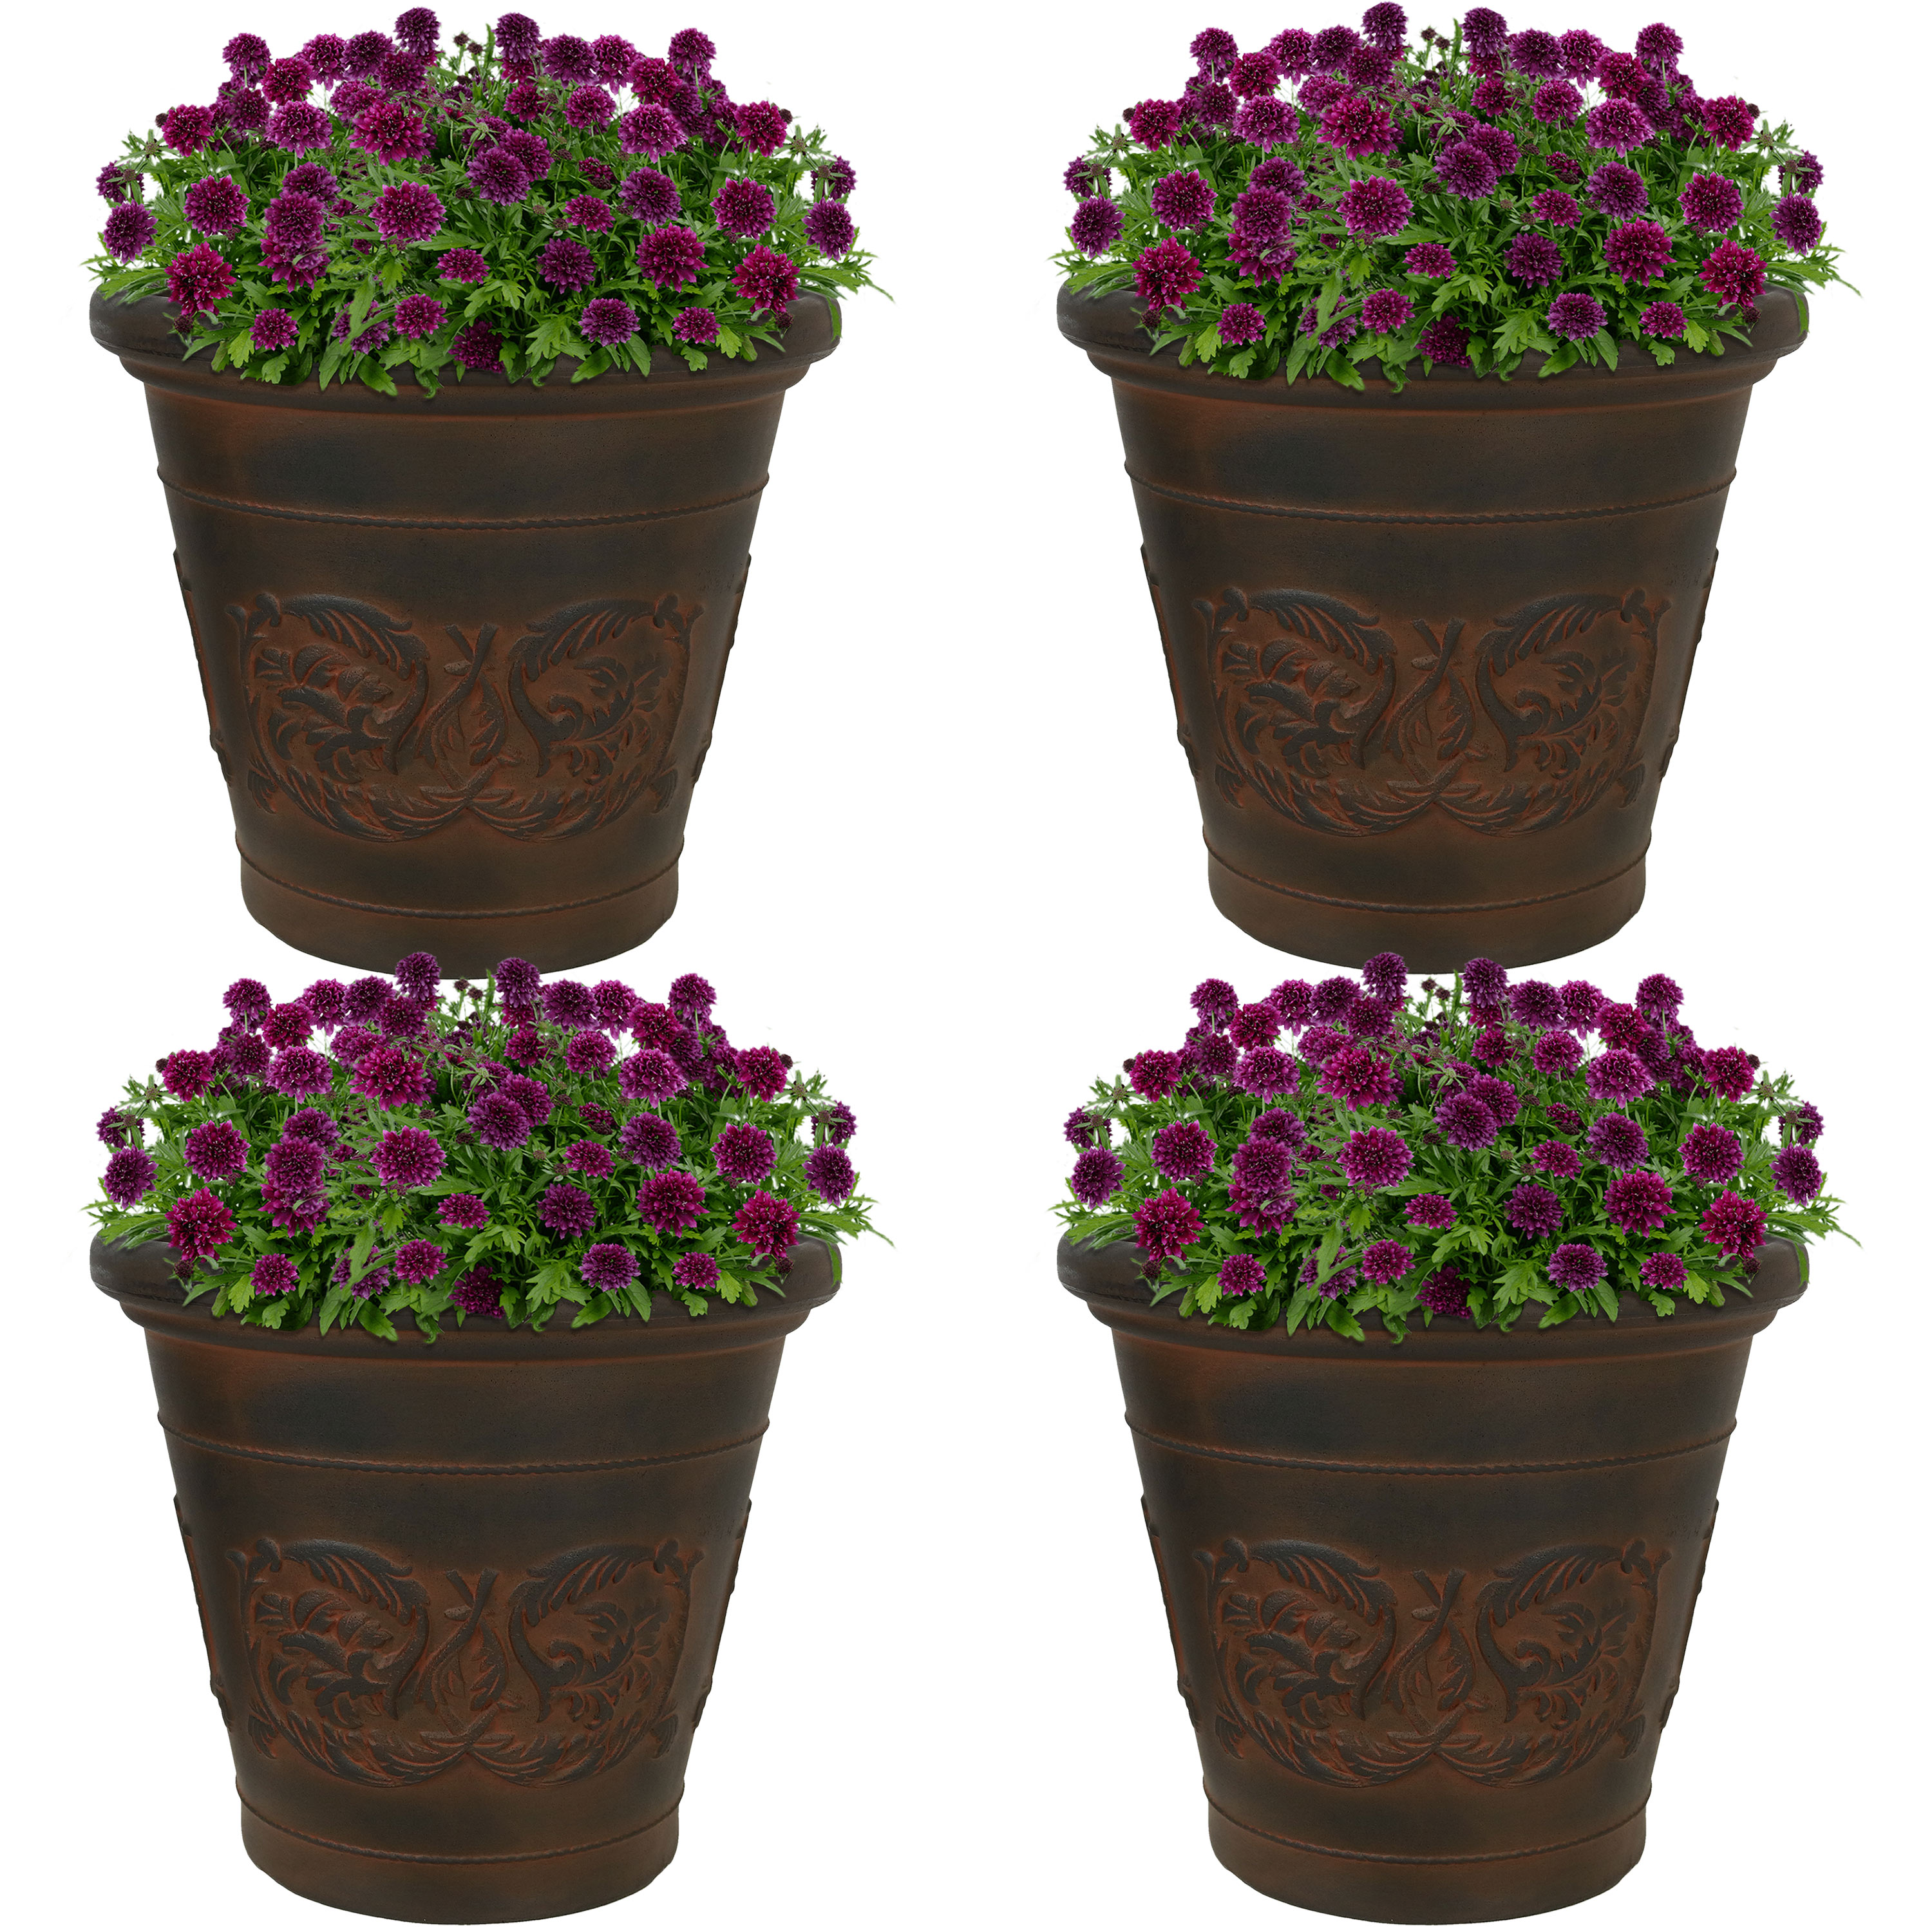 Sunnydaze Arabella Outdoor Flower Pot Planter  - Rust - 16-Inch - 4-Pack